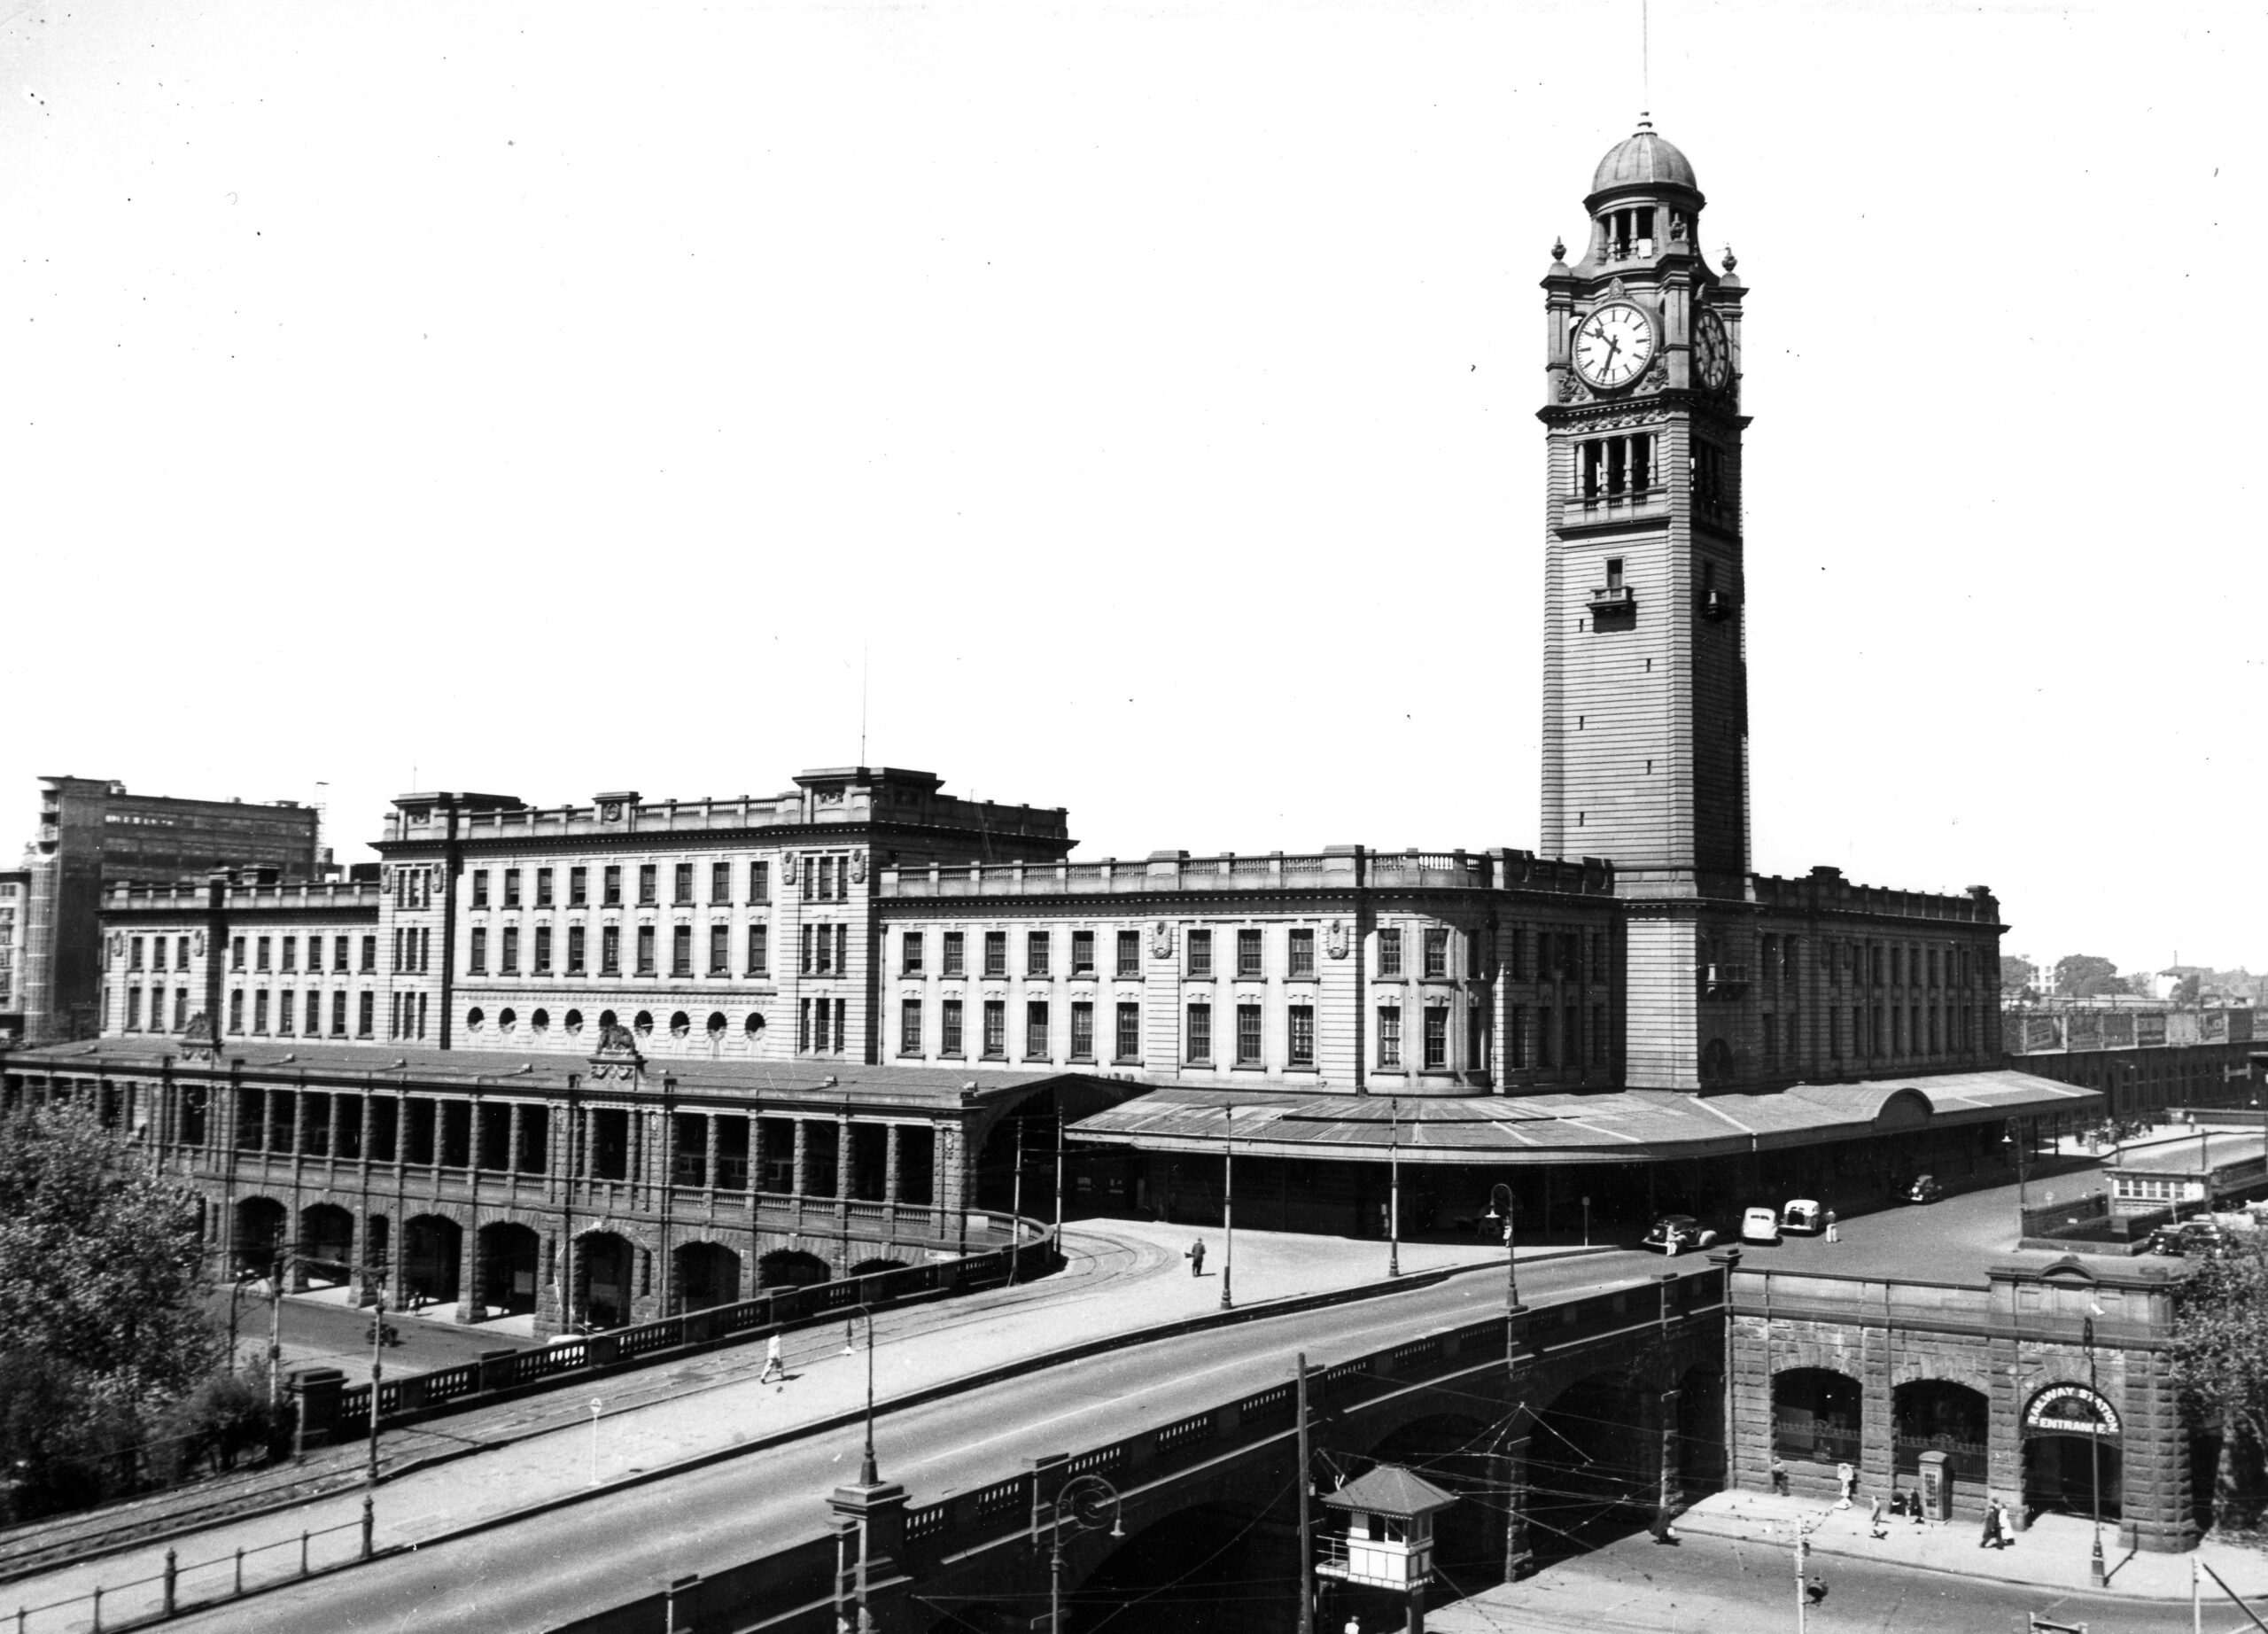 Sydney Central Station Heritage Restoration